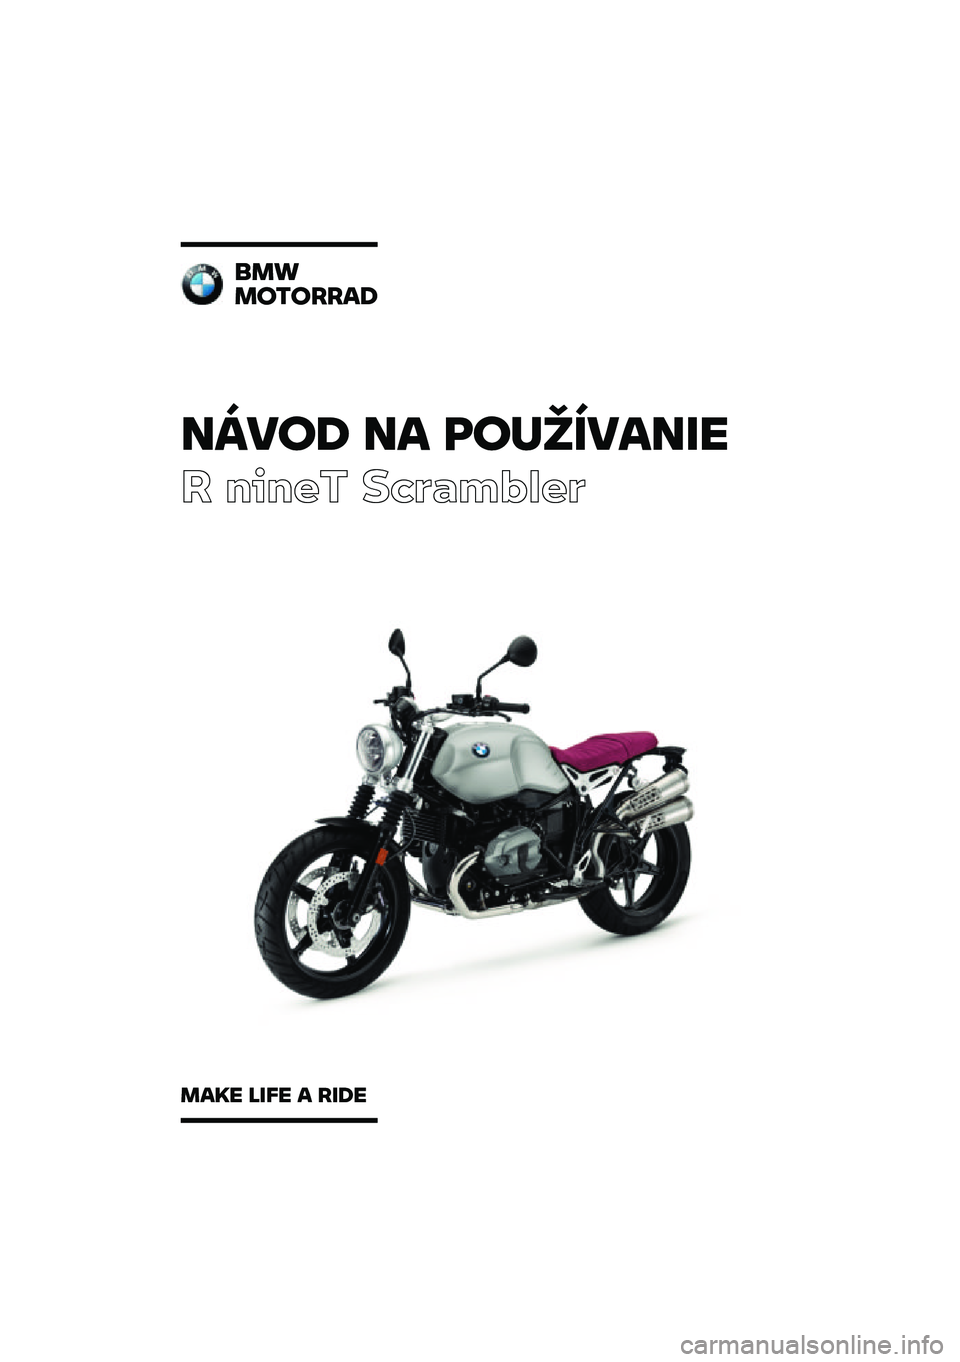 BMW MOTORRAD R NINE T SCRAMBLER 2020  Návod na používanie (in Slovak) �����\b �� �	��
�������
� ����� ��\b�	�
��\f�
��	
���
��������\b
���� ���� � ���\b� 